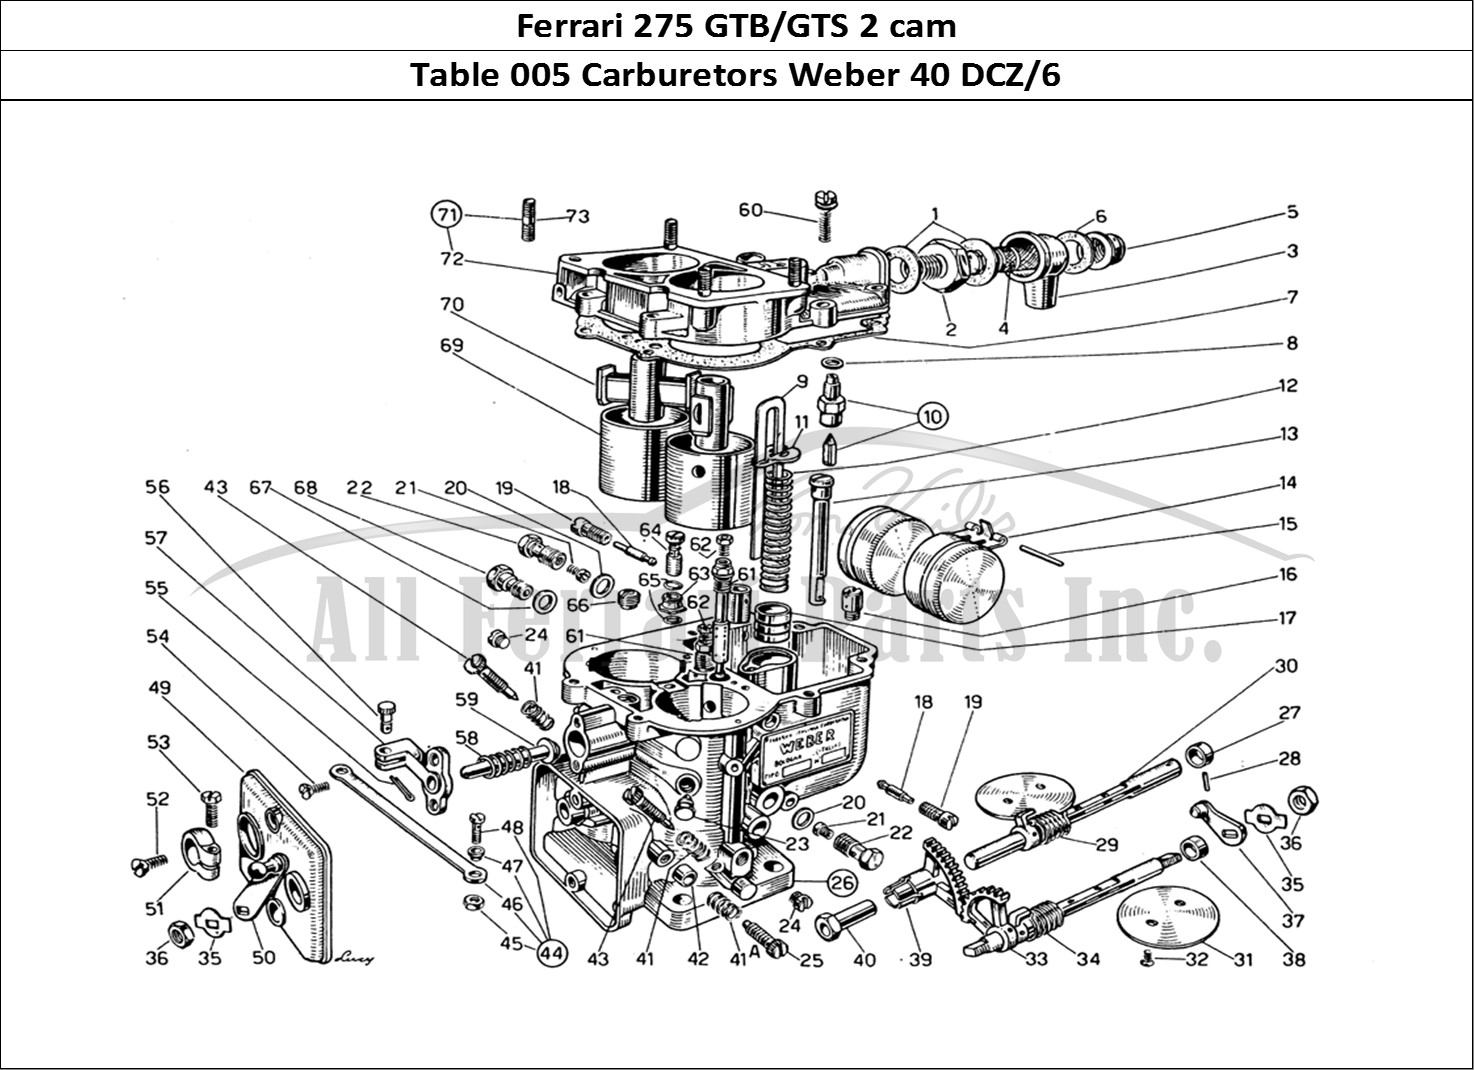 Ferrari Parts Ferrari 275 GTB/GTS 2 cam Page 005 Carburettors Weber 40 DCZ